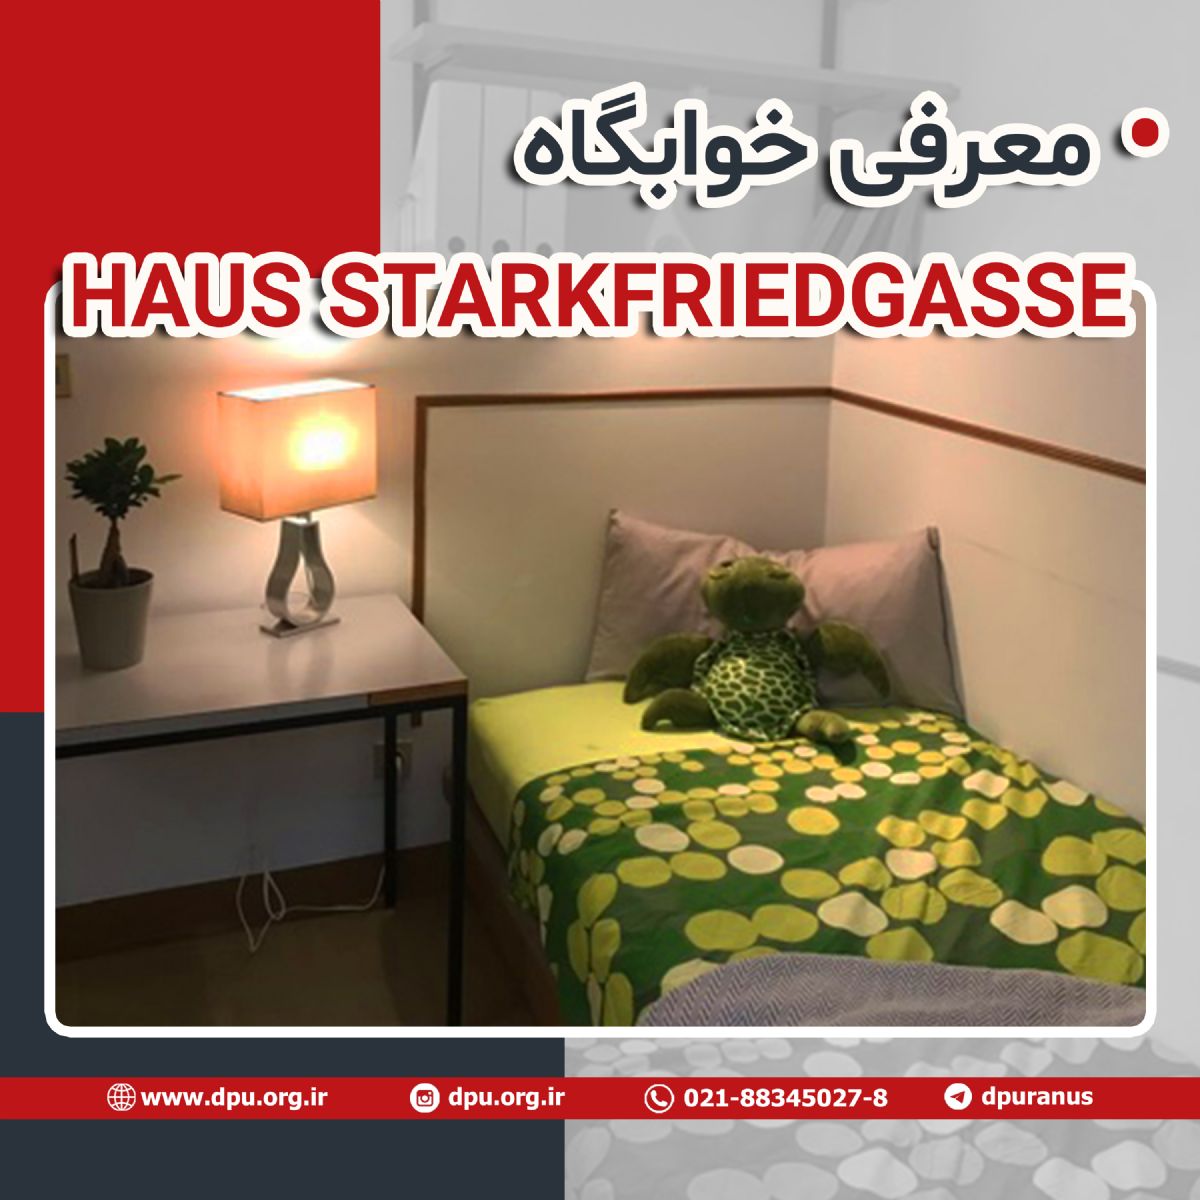 معرفی خوابگاه HAUS STARKFRIEDGASSE در اتریش